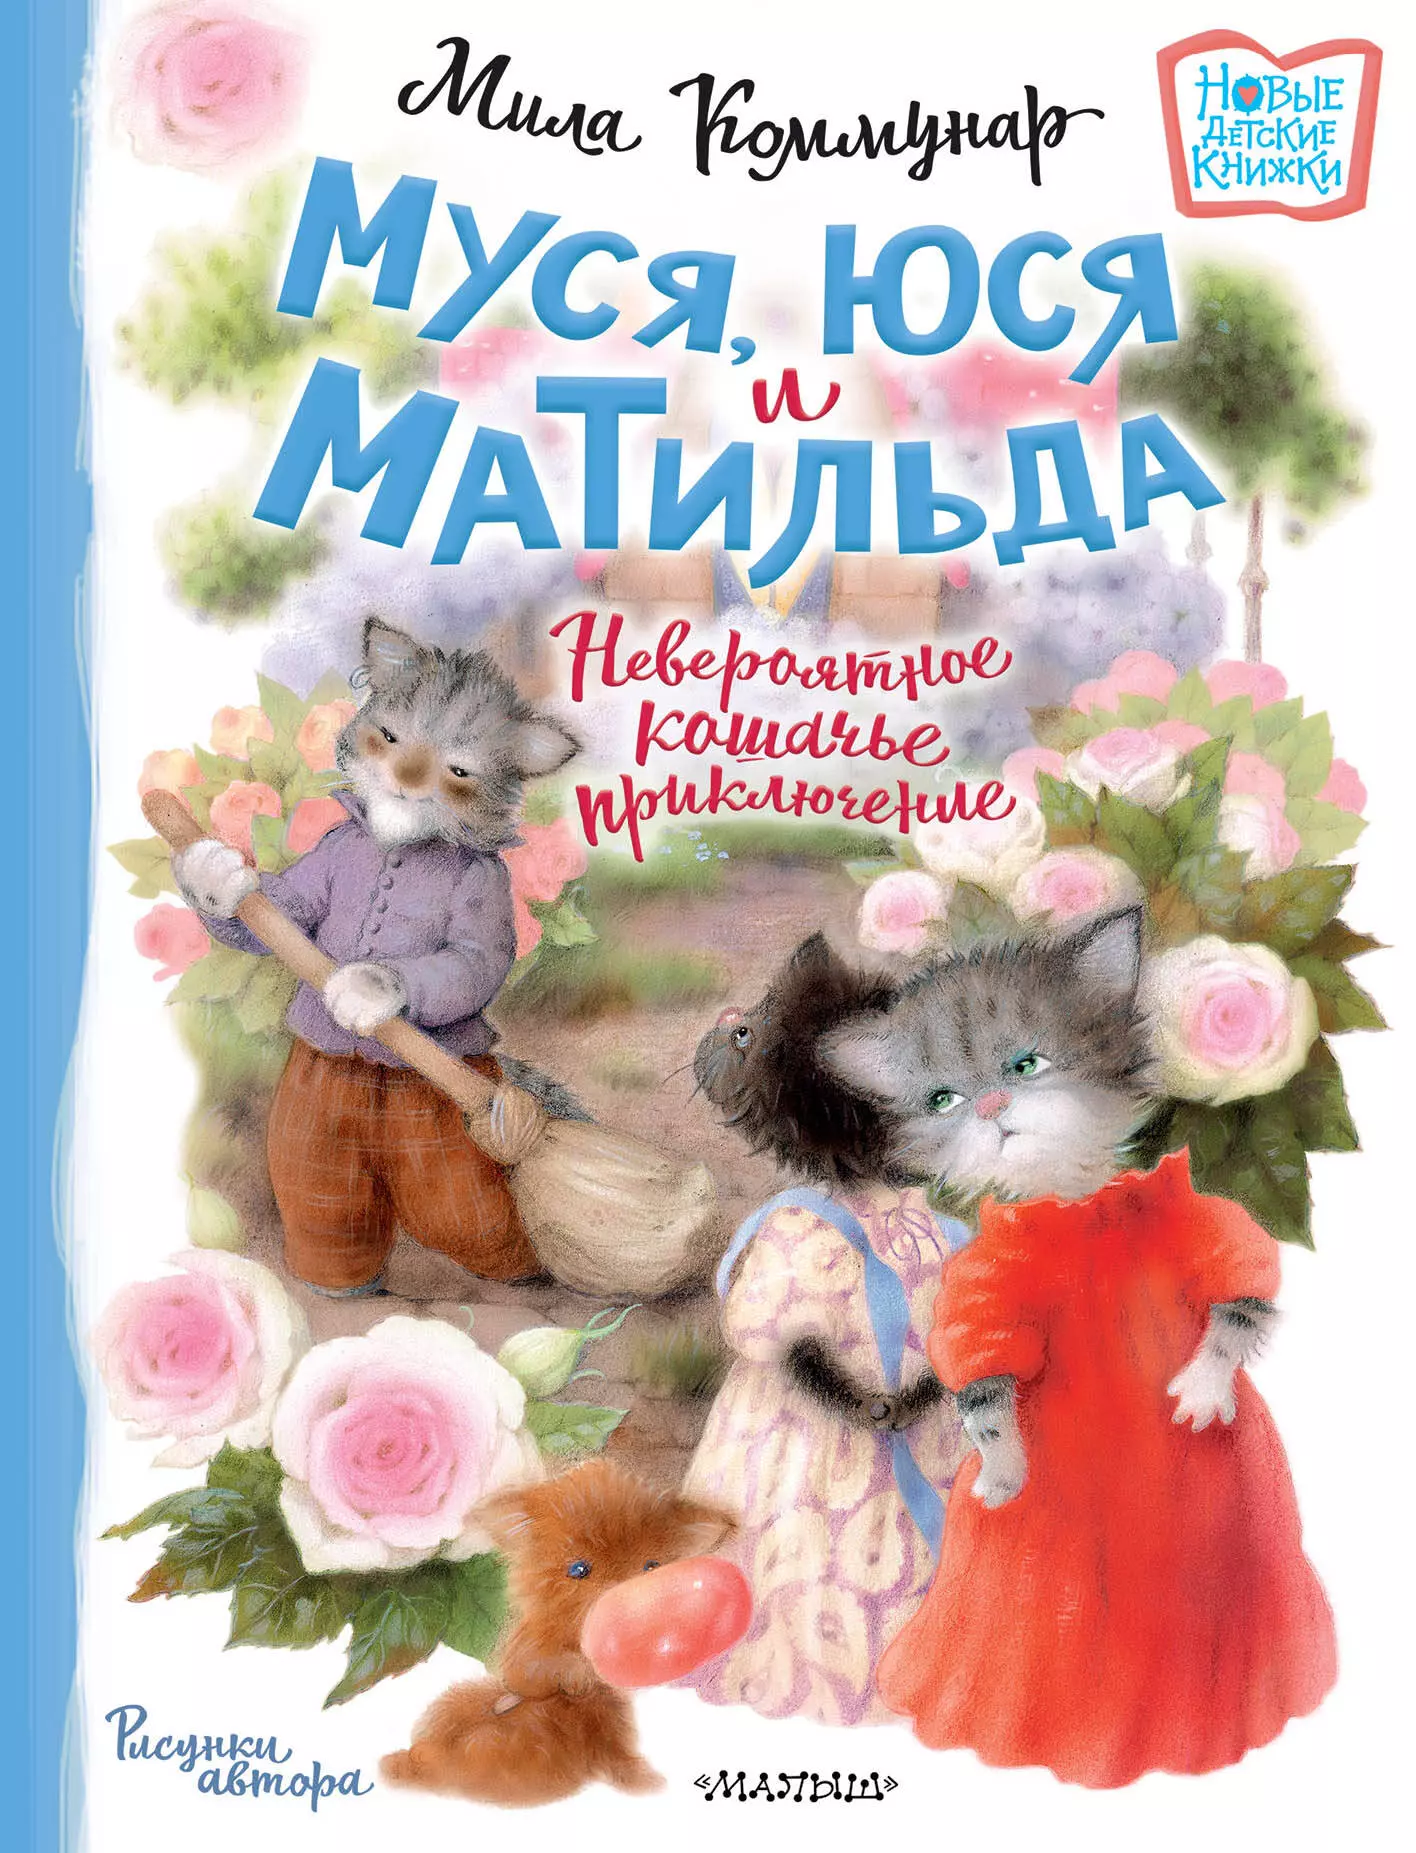 Коммунар Мила - Муся, Юся и Матильда. Невероятное кошачье приключение